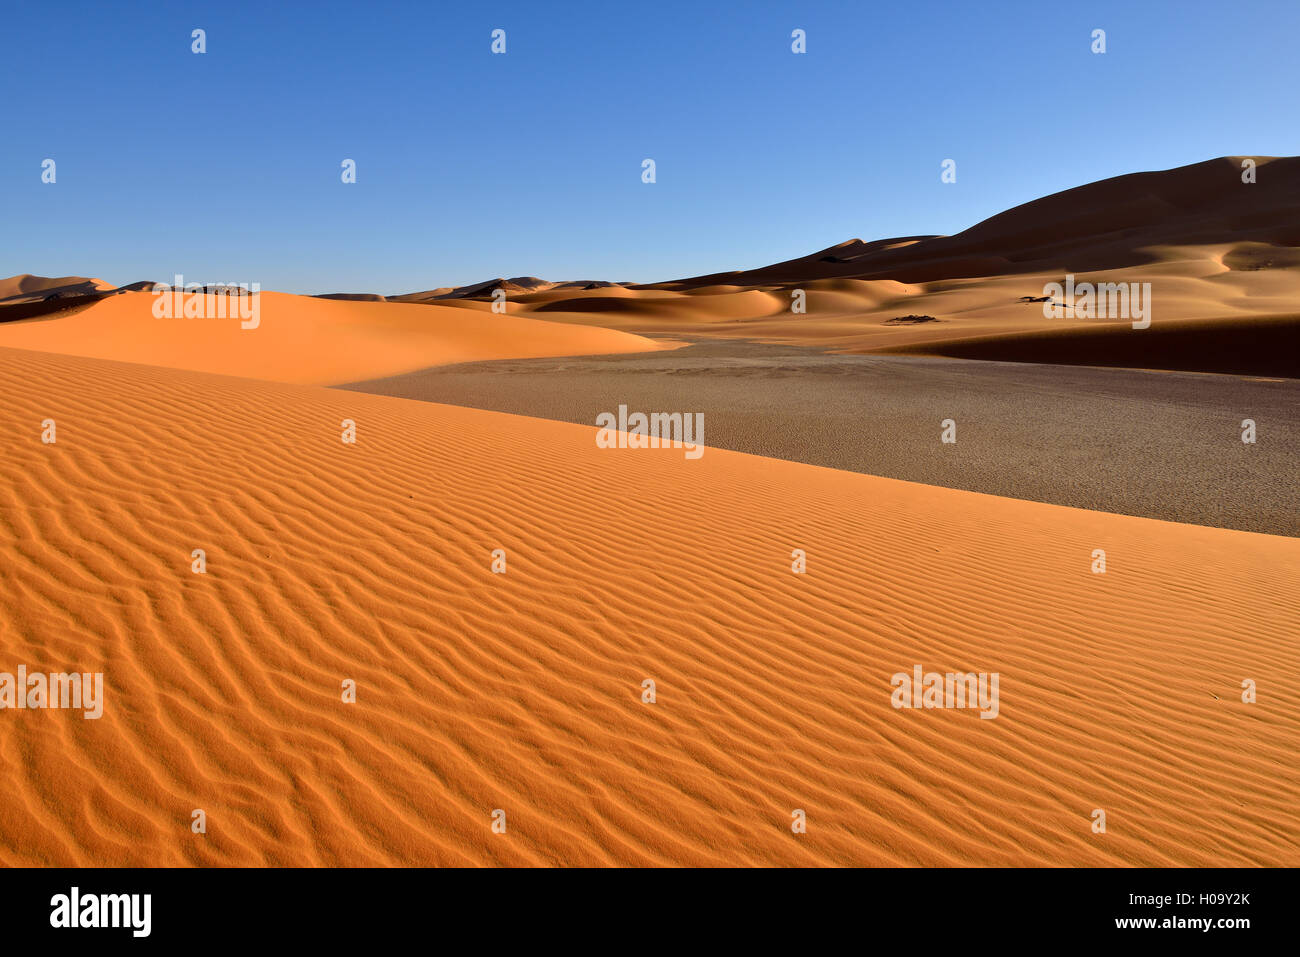 Sand dunes of In Djerane, Tadrart, Tassili n'Ajjer National Park, UNESCO World Heritage Site, Sahara desert, Algeria Stock Photo